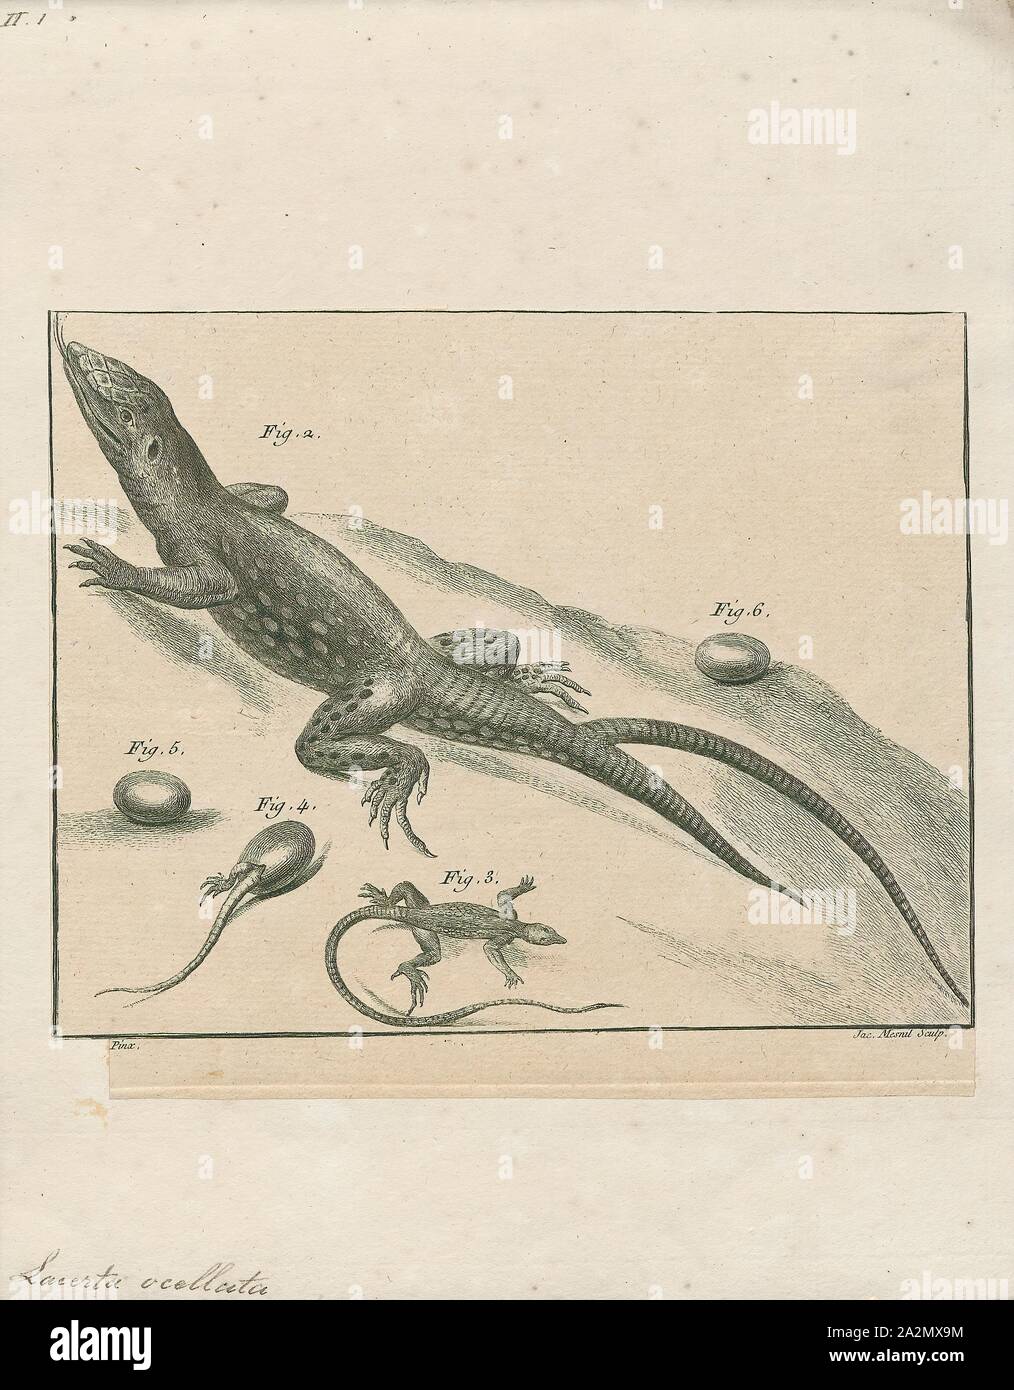 Lacerta ocellata, Drucken, 1700-1880 Stockfoto